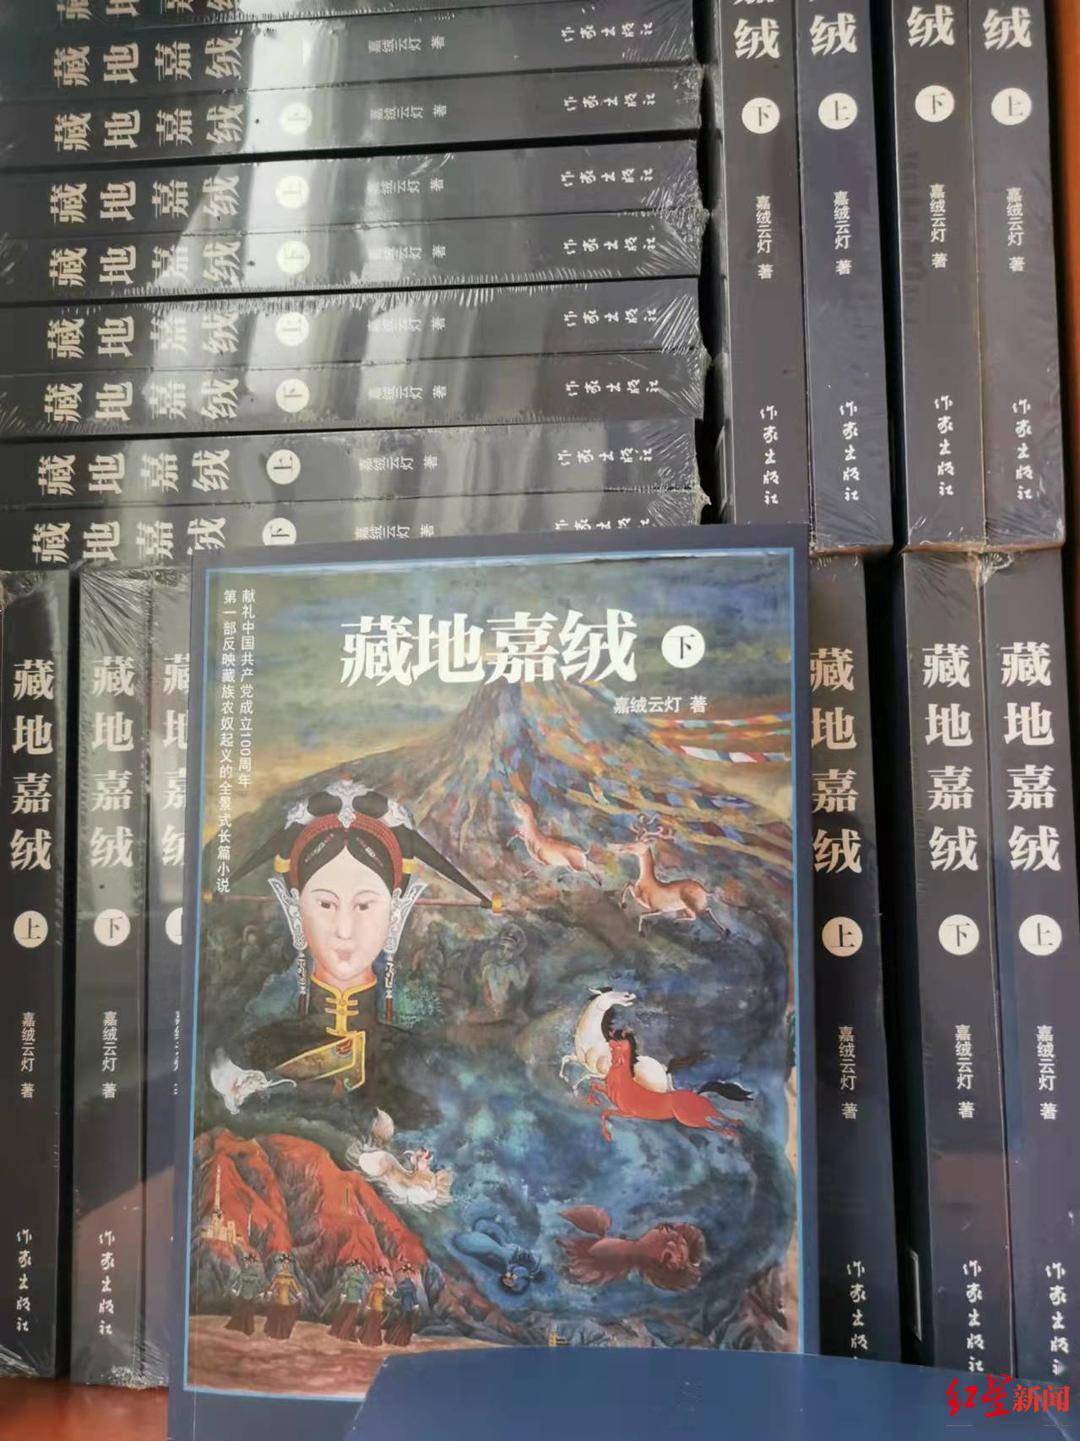 丹巴县|再现清代农奴起义 甘孜作家历时十余年创作出版长篇小说《藏地嘉绒》